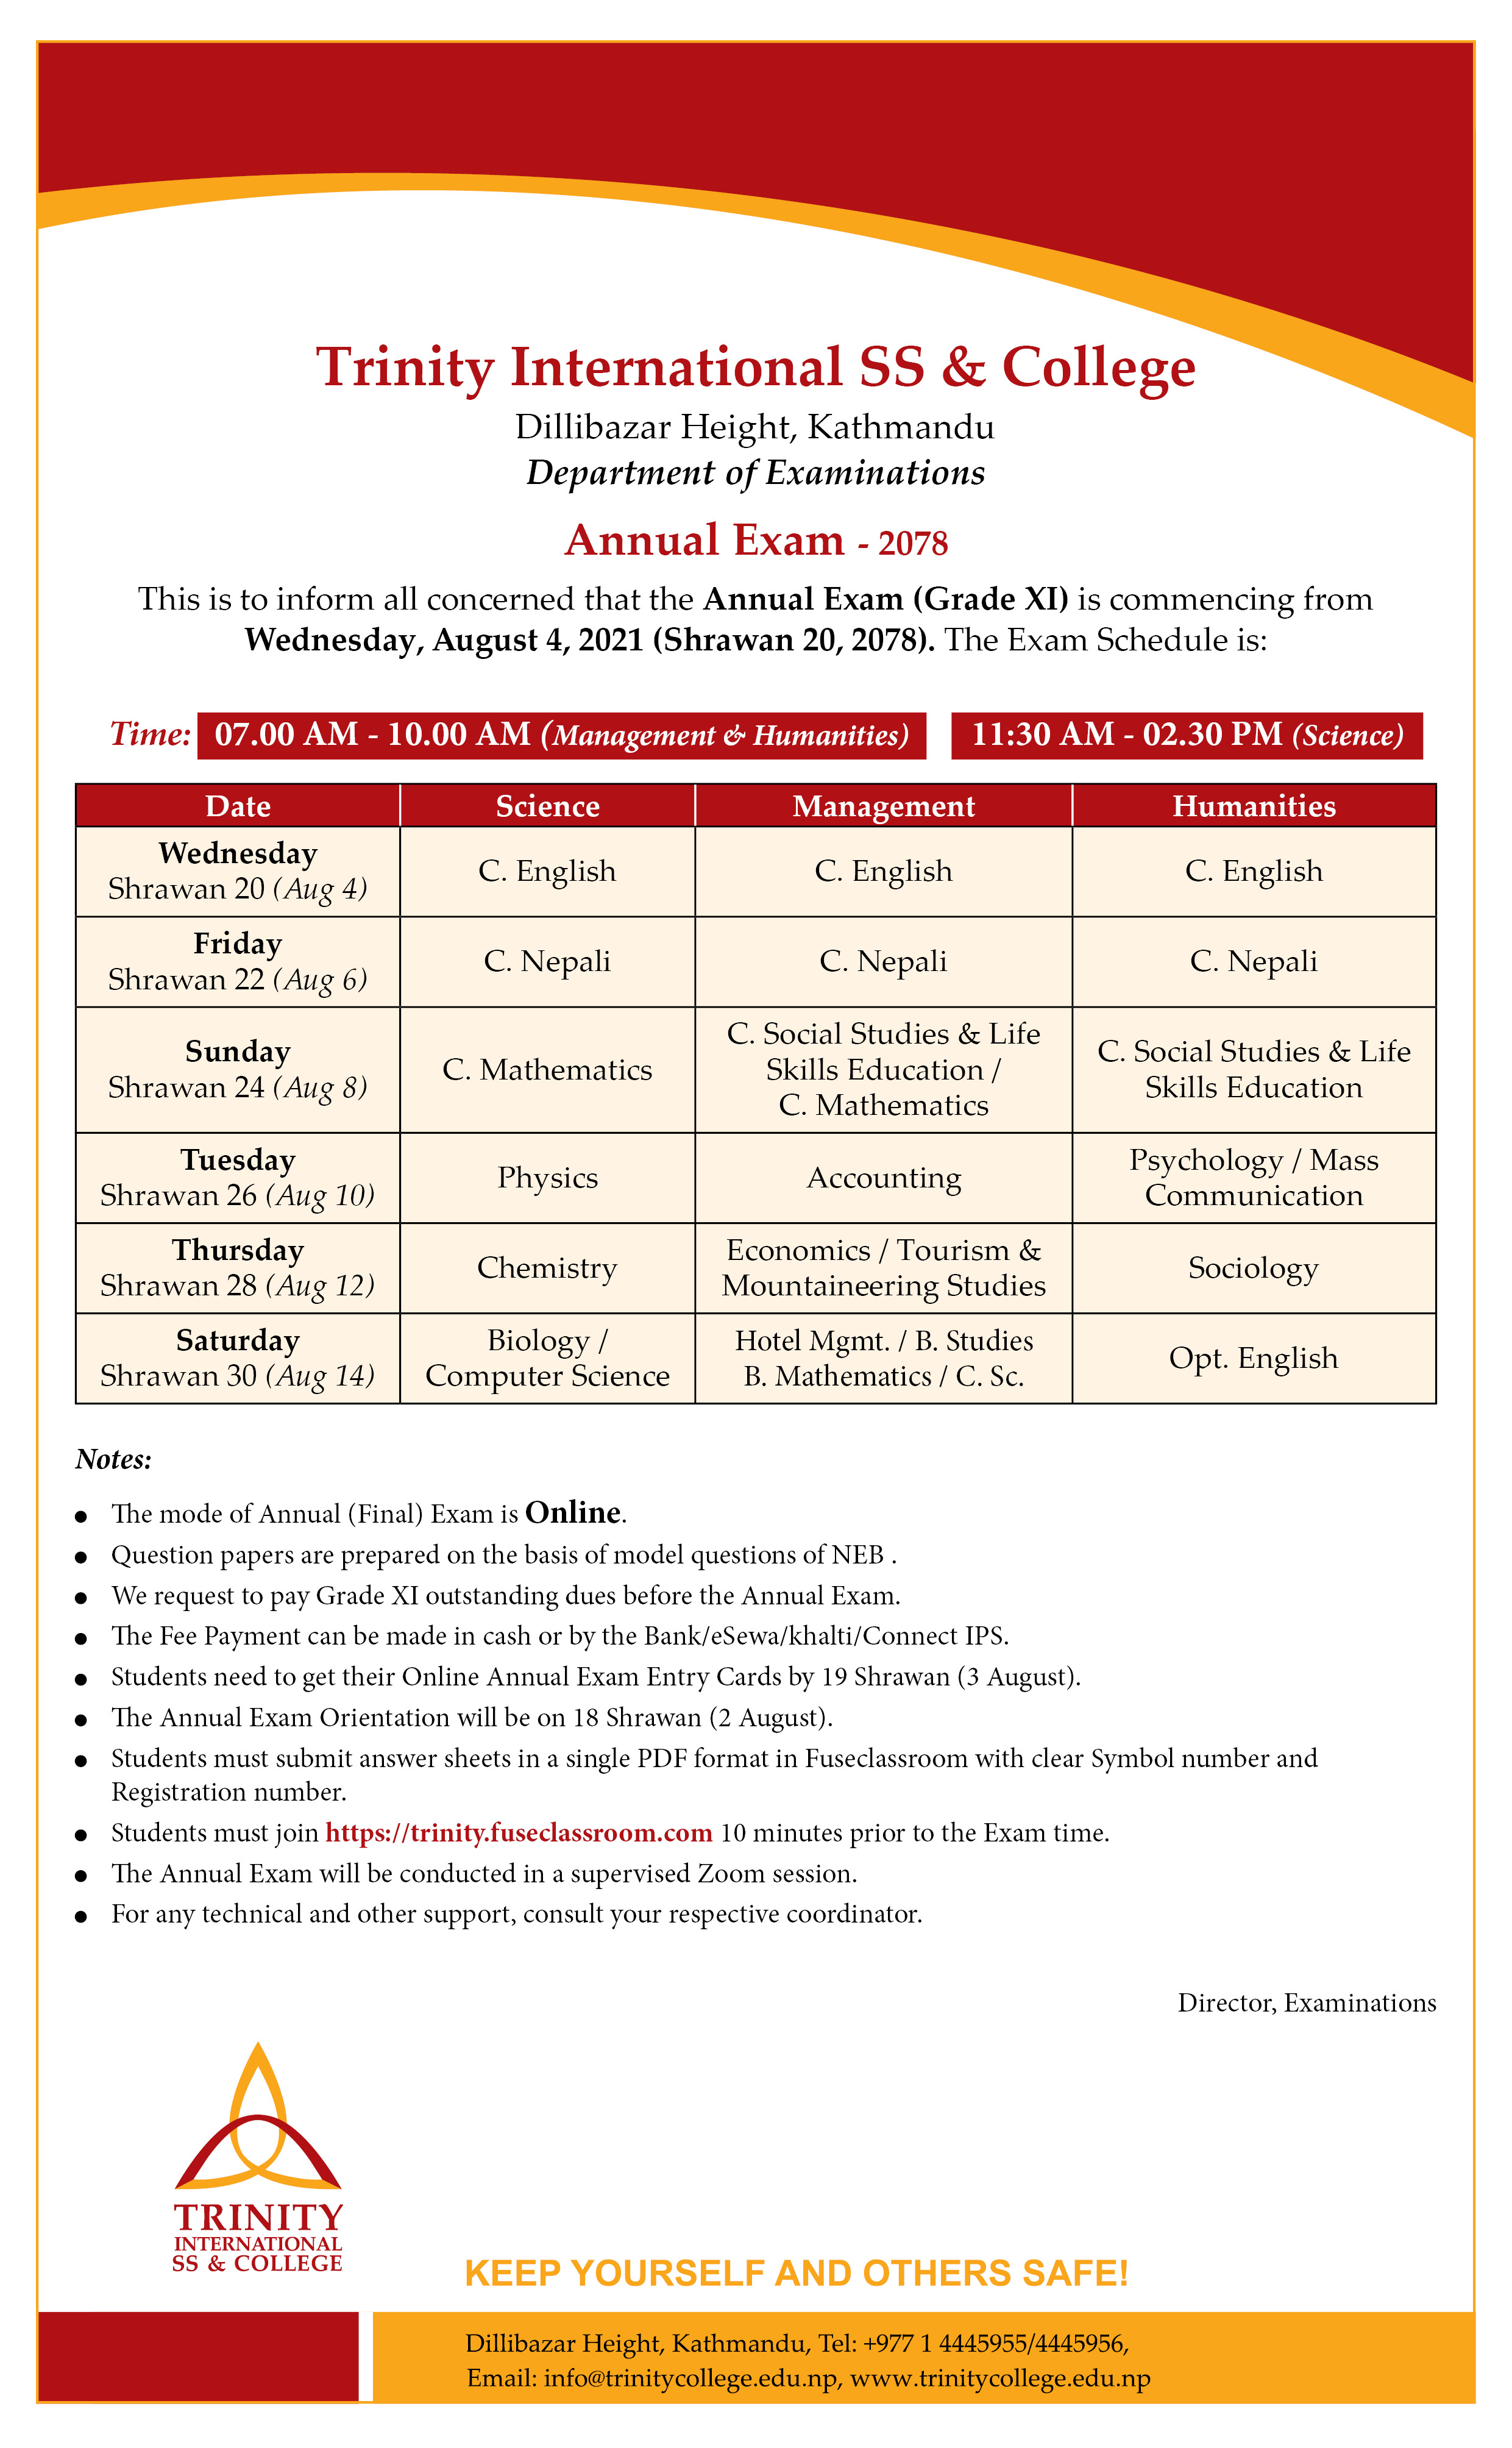 Grade XI Annual Exam Notice - 2078